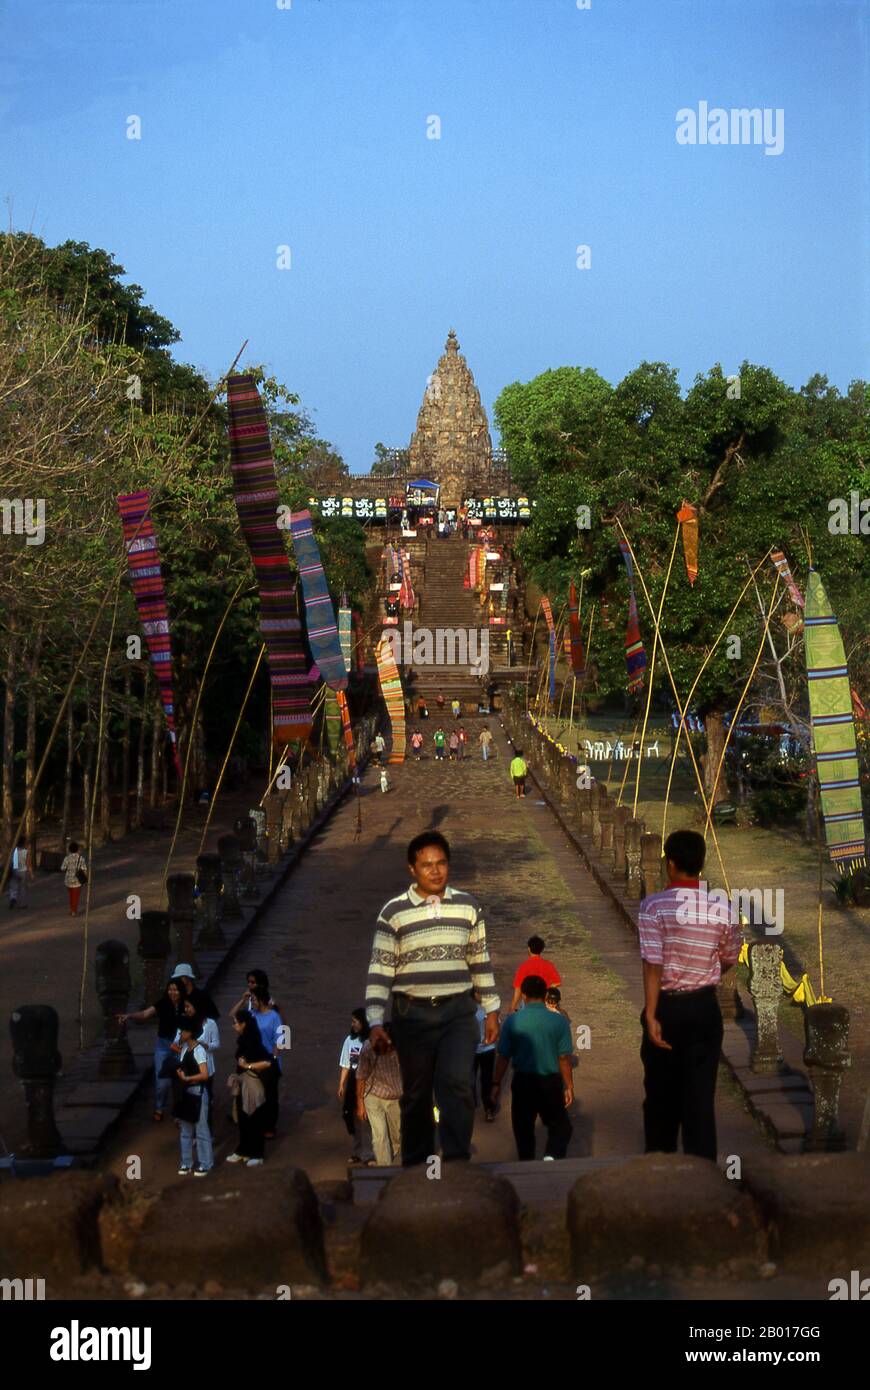 Thailand: Naga-köpfige Steintreppe, Prasat hin Phanom rung (Phanom rung Stone Castle), Provinz Buriram, Nordost-Thailand. Phanom rung ist ein Khmer-Tempelkomplex am Rand eines erloschenen Vulkans auf 1.320 Fuß über dem Meeresspiegel in der Provinz Buriram in der Isaan-Region Thailands. Es wurde in den 10th bis 13th Jahrhunderten aus Sandstein und Laterit erbaut. Es war ein Hindu-Schrein, der Shiva gewidmet ist und symbolisiert den Berg Kailash, seine himmlische Wohnung. Stockfoto